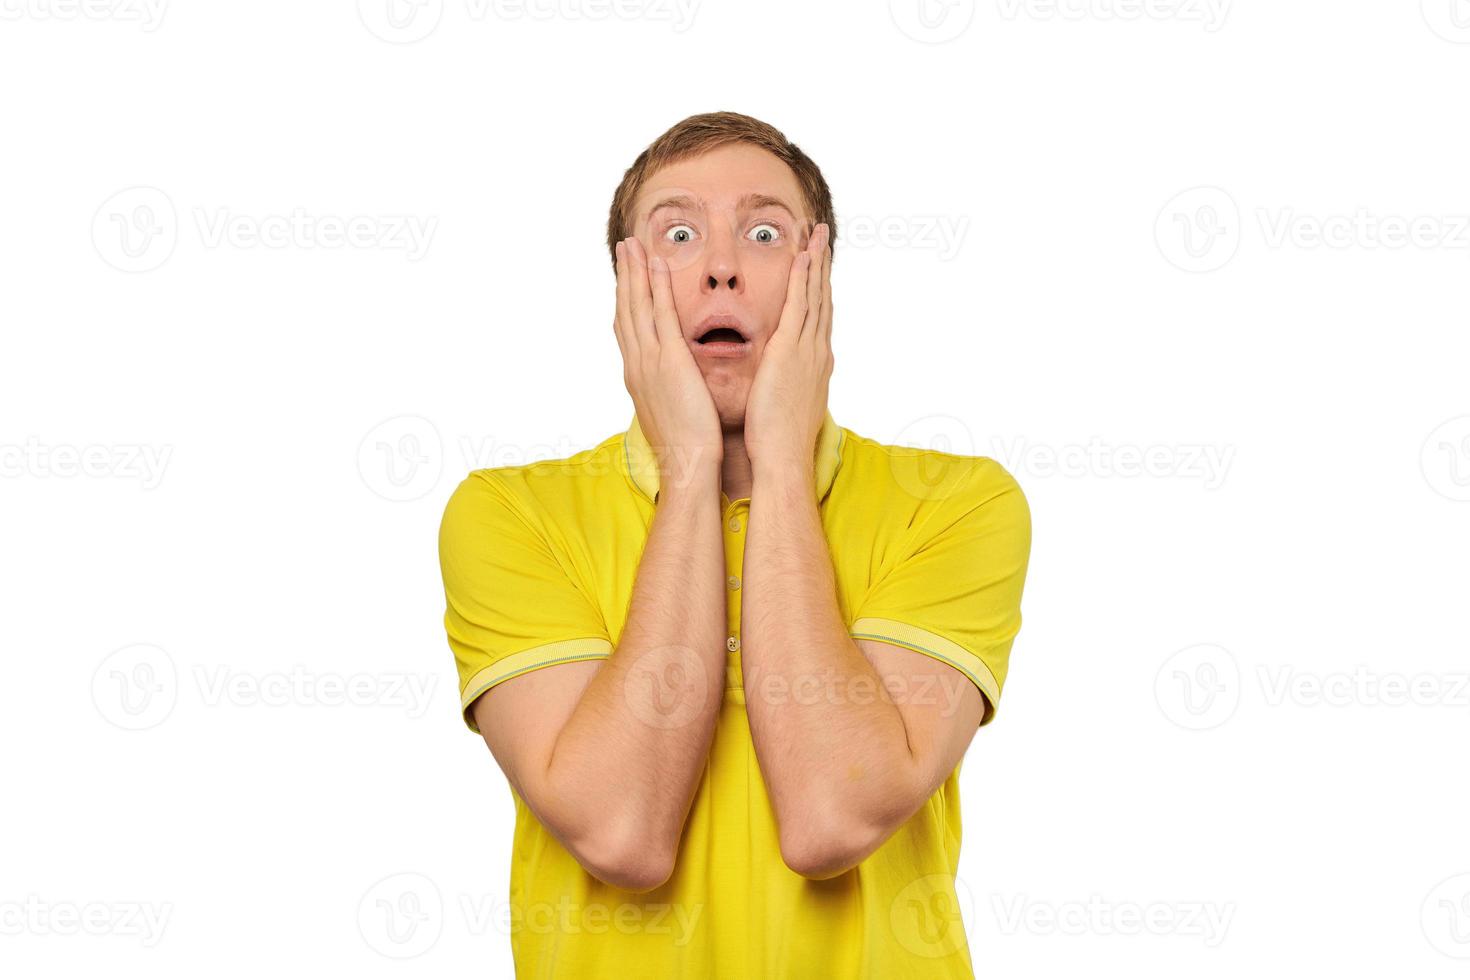 verängstigter junger Mann im gelben T-Shirt, der die Hände über das Gesicht hält, weißer Hintergrund, ängstlich, negativ foto